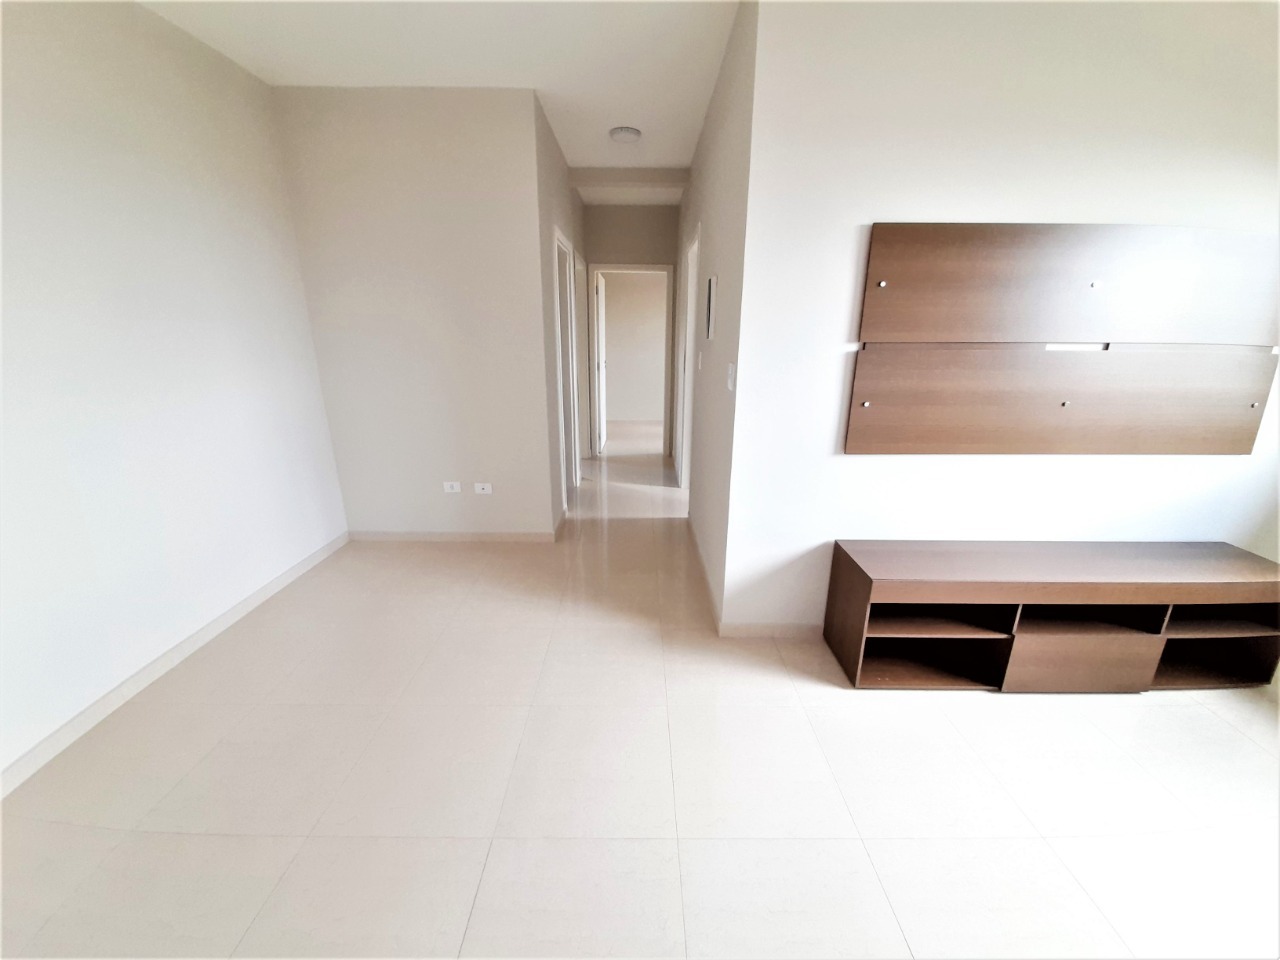 Apartamento à venda, 3 quartos, 1 vaga, no bairro Morumbi em Piracicaba - SP